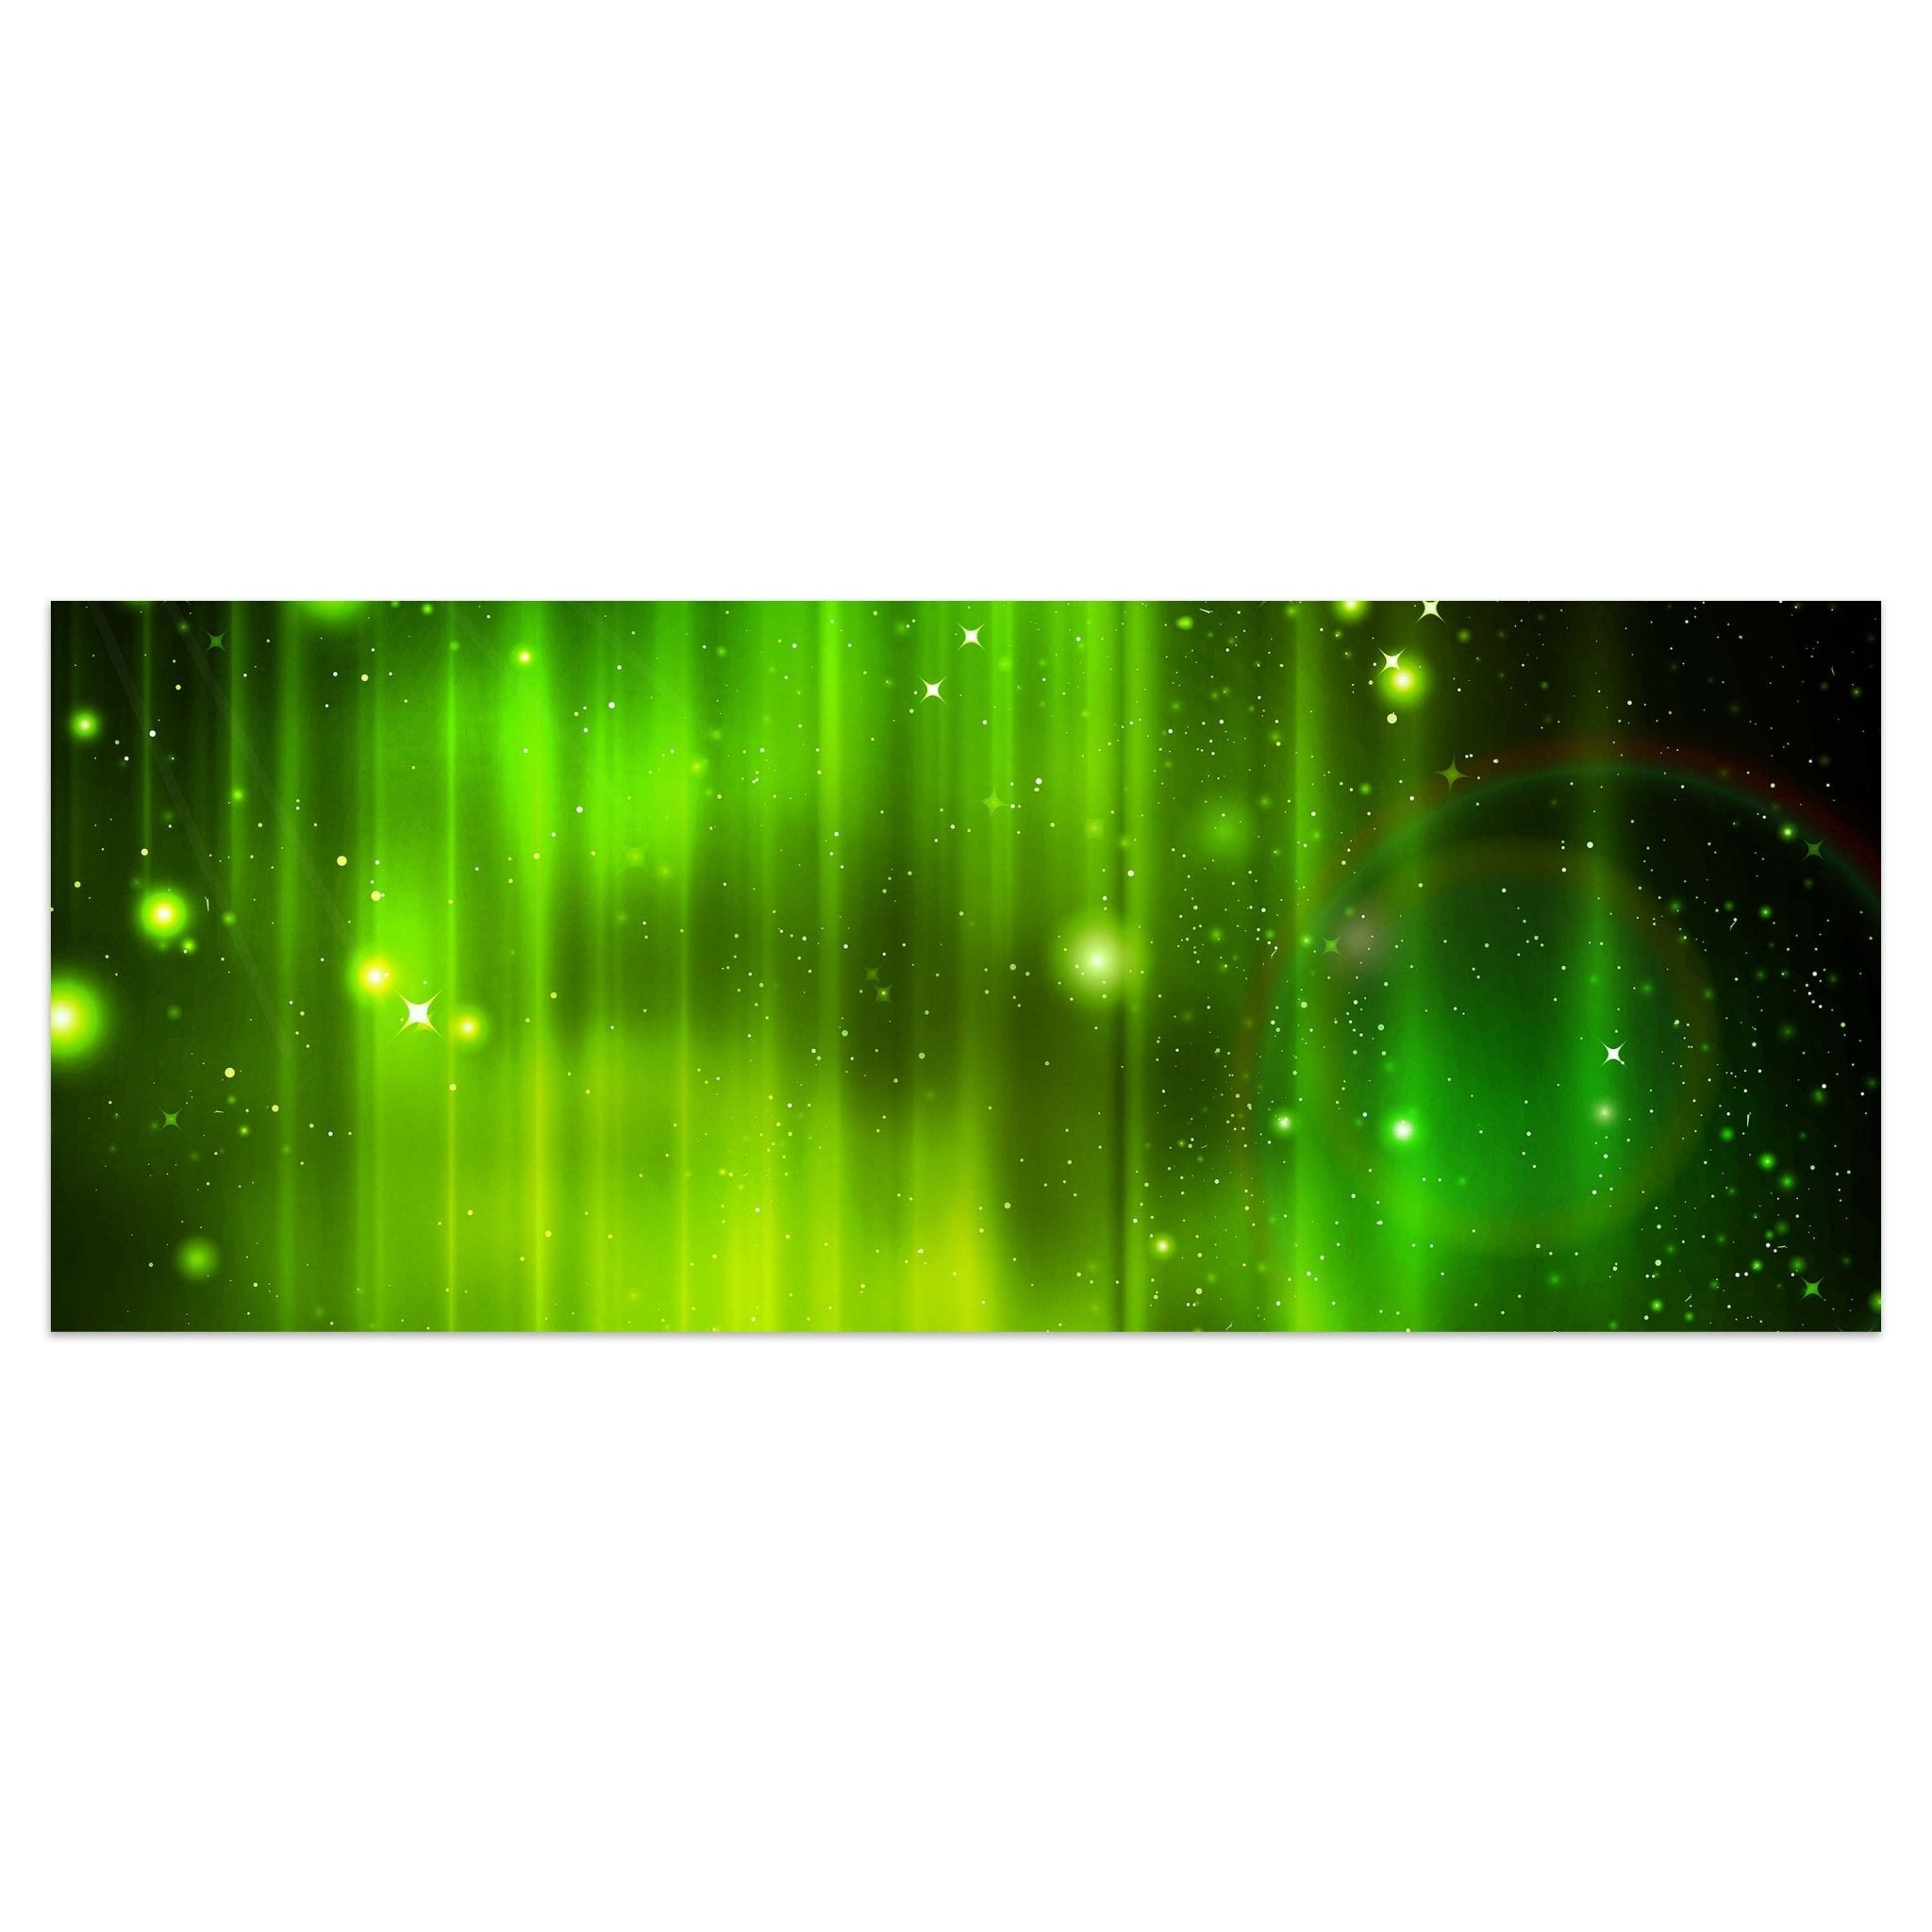 Leinwandbild Grüner Nebel M0476 kaufen - Bild 1